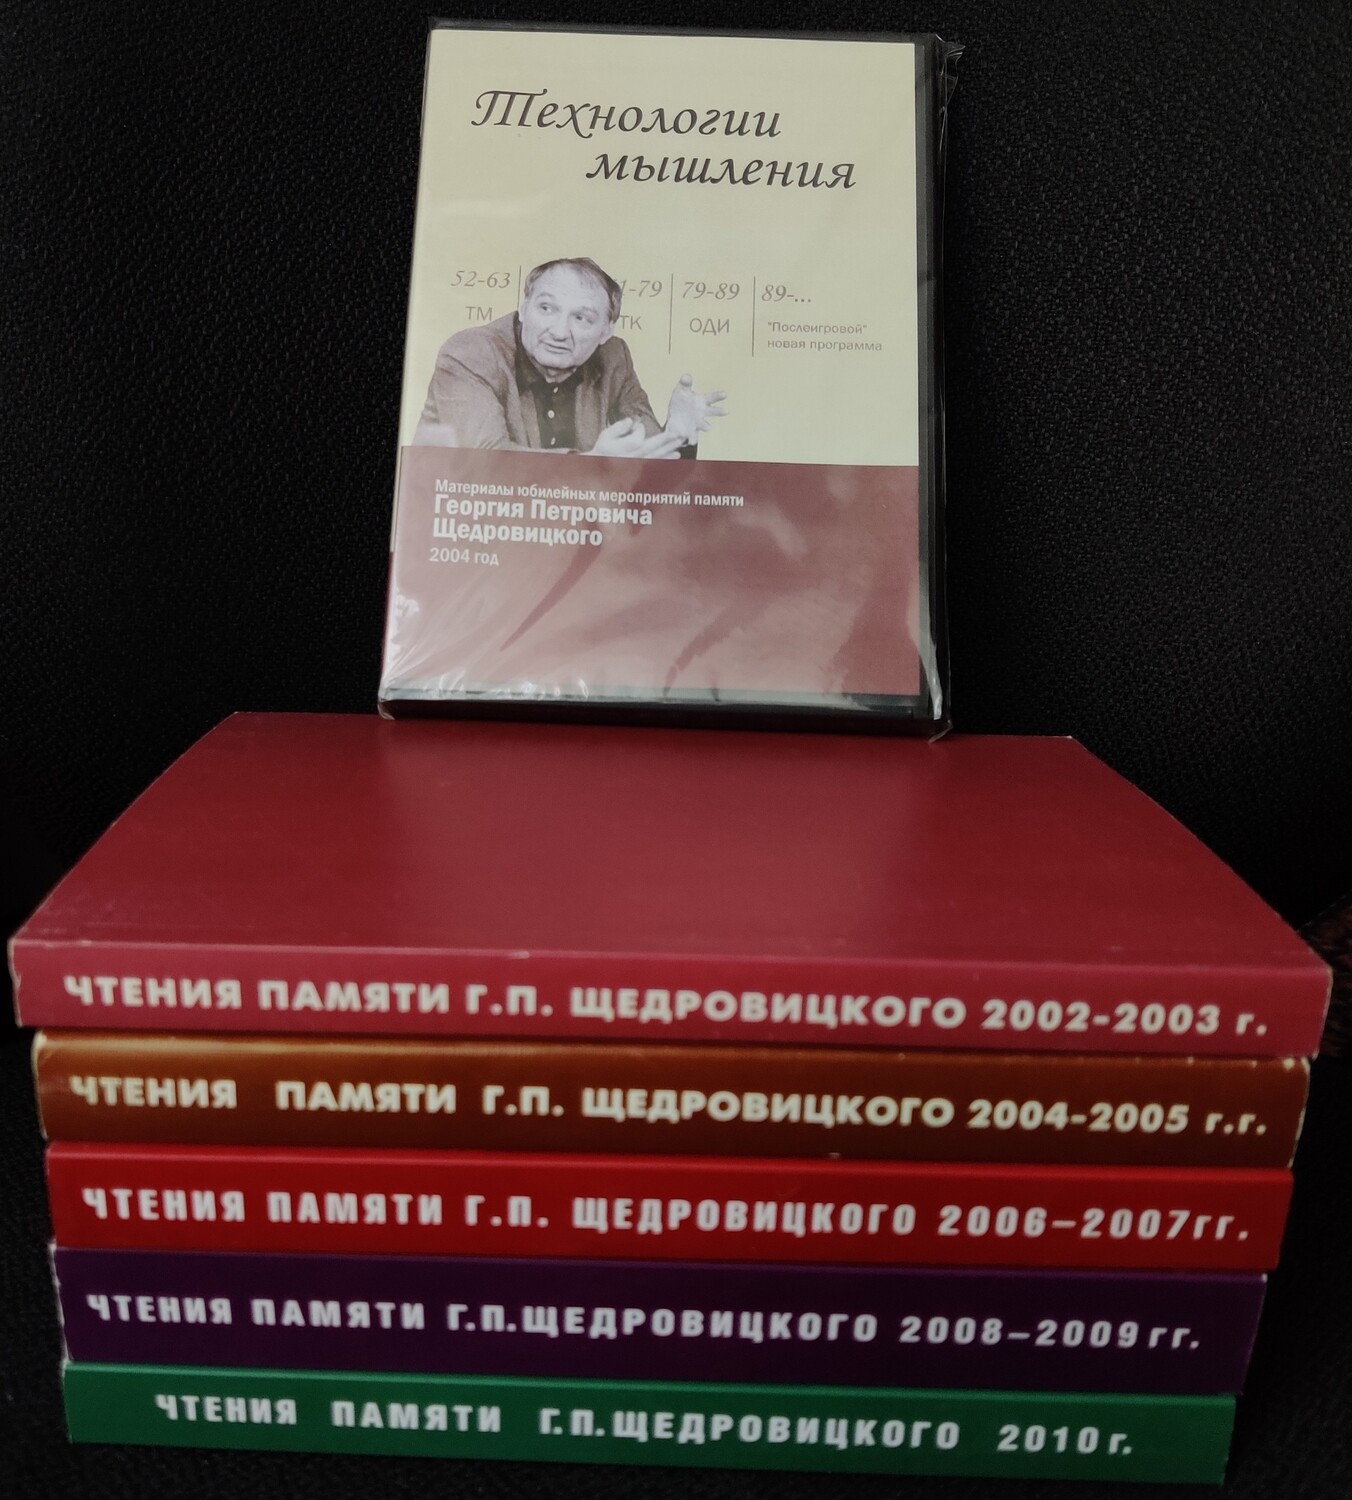 Полный комплект книг из серии "Чтения памяти Г.П.Щедровицкого" (+ 1 DVD в подарок).